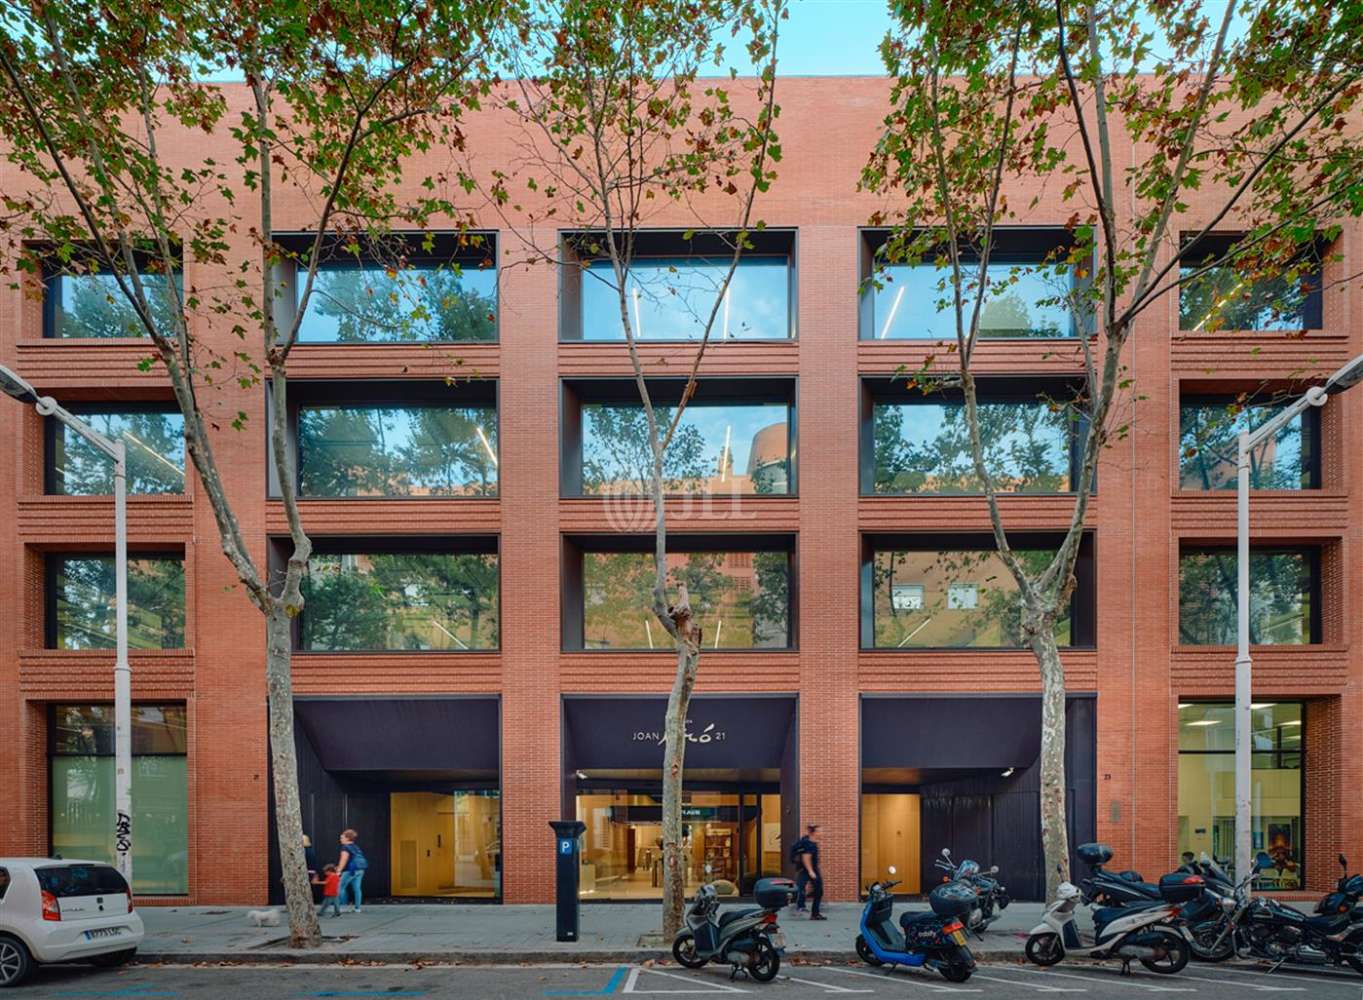 Office Barcelona, 8005 - Joan Miró 21